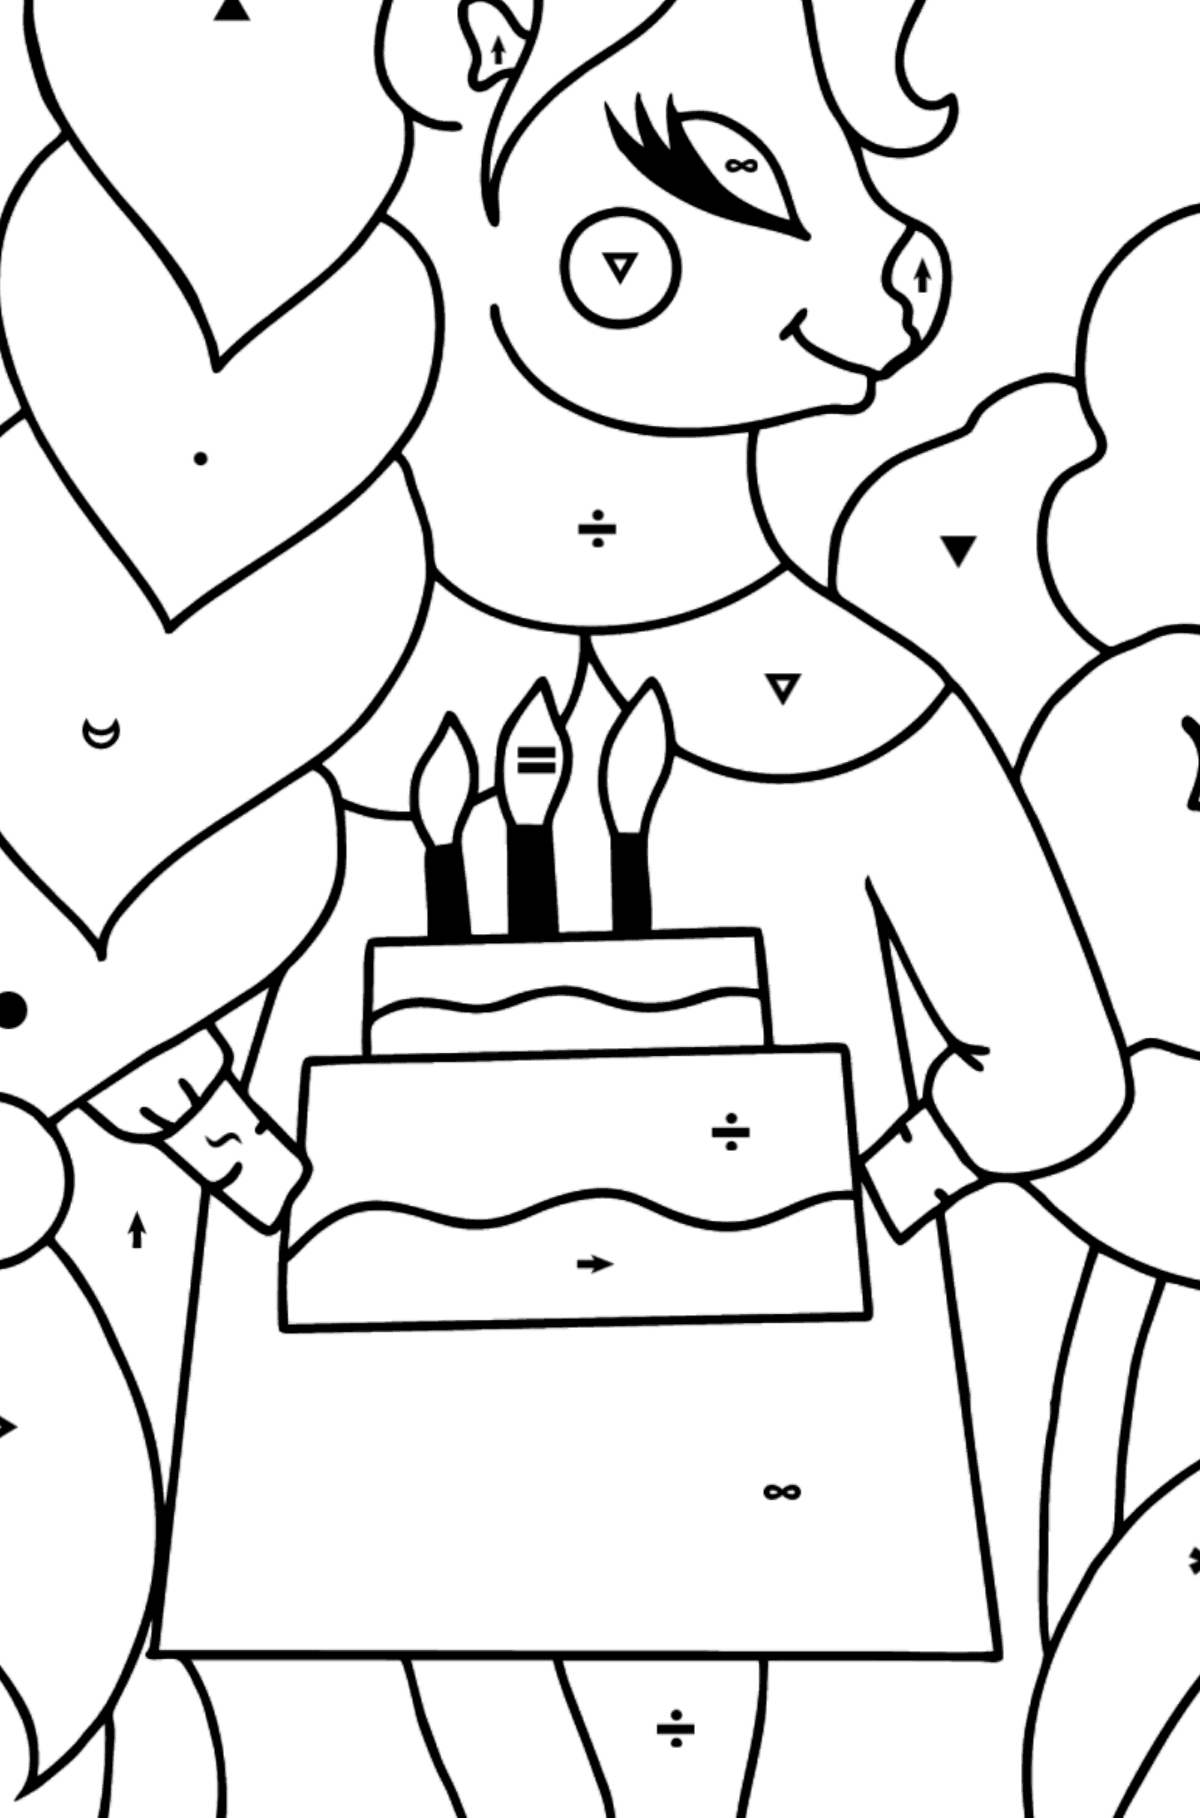 Boyama sayfası doğum günü tek boynuzlu at - Sembollerle Boyama çocuklar için